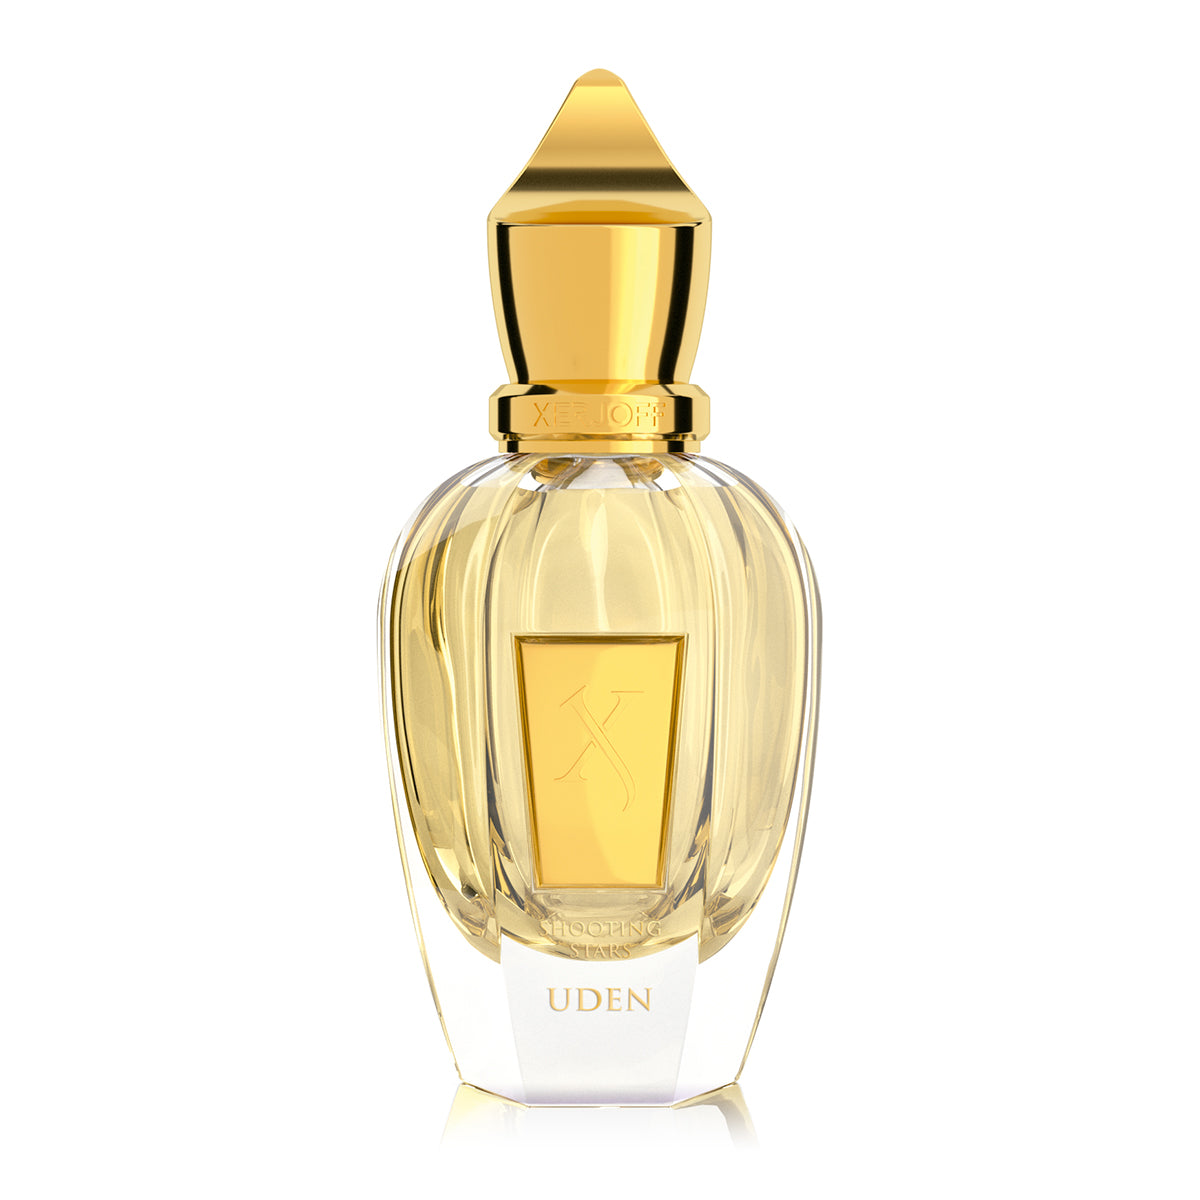 Uden - Xerjoff - Parfum 50ml